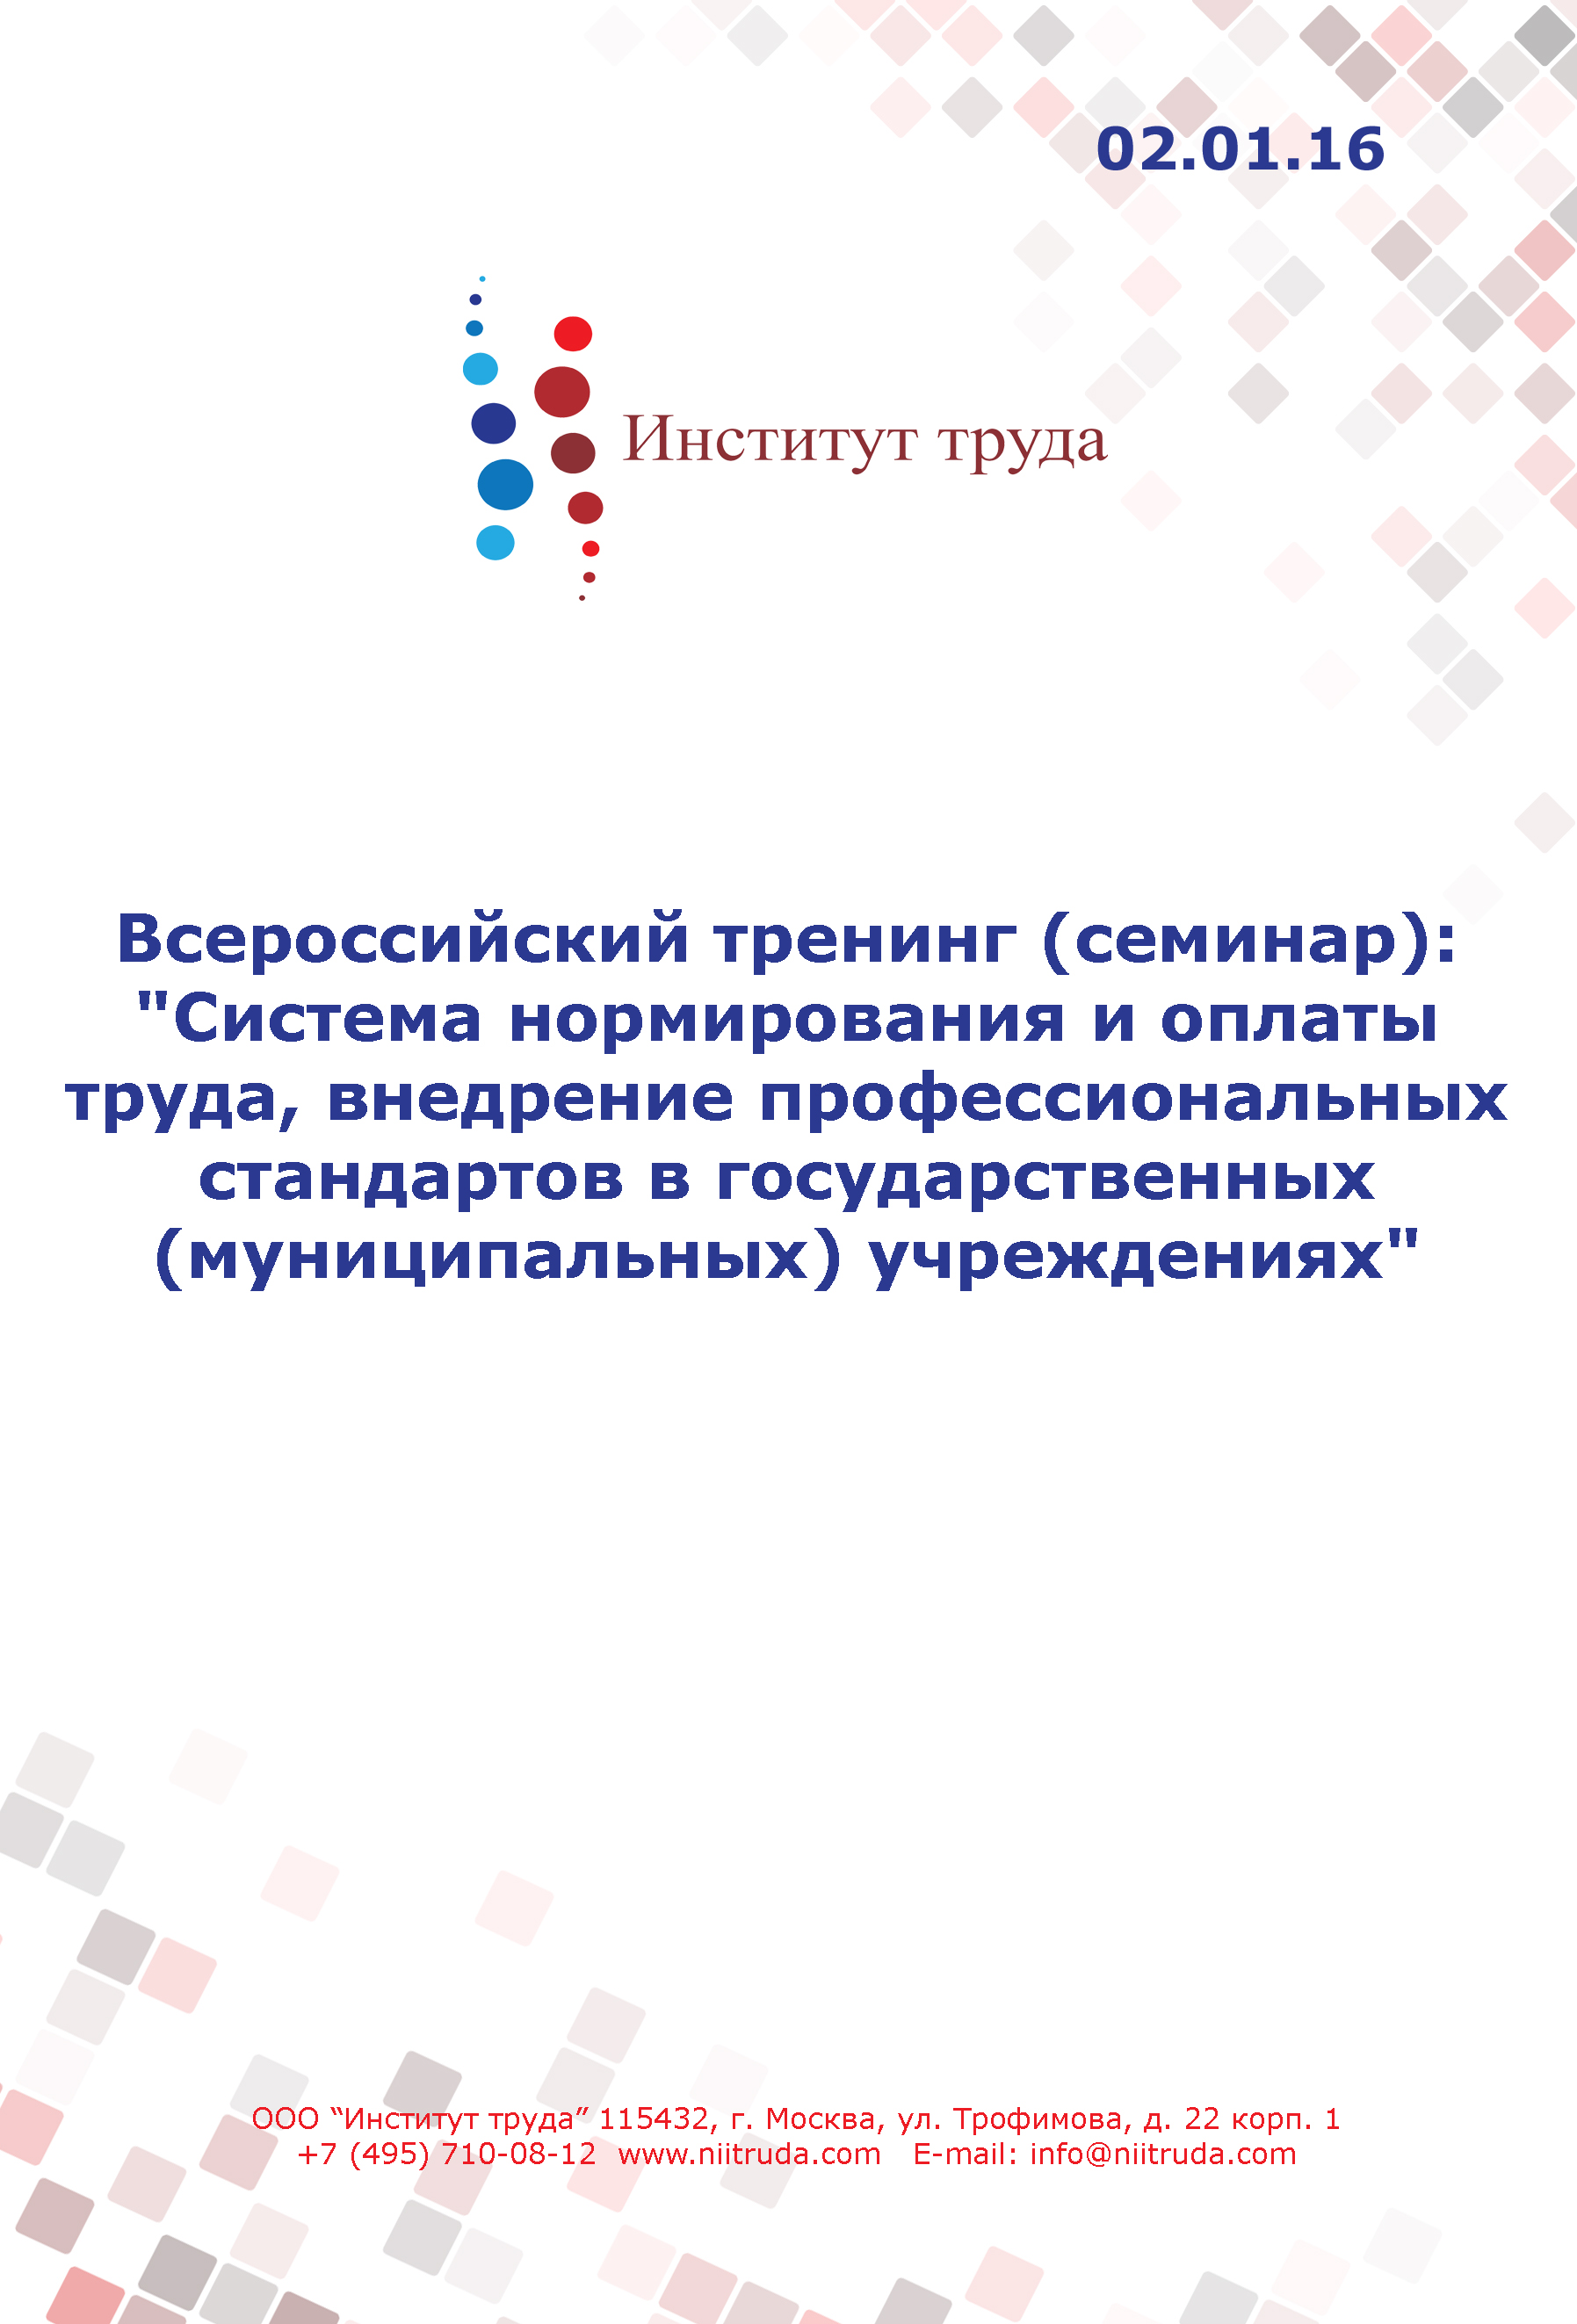 Всероссийский тренинг (семинар): "Система нормирования и оплаты труда, внедрение профессиональных стандартов в государственных (муниципальных) учреждениях"